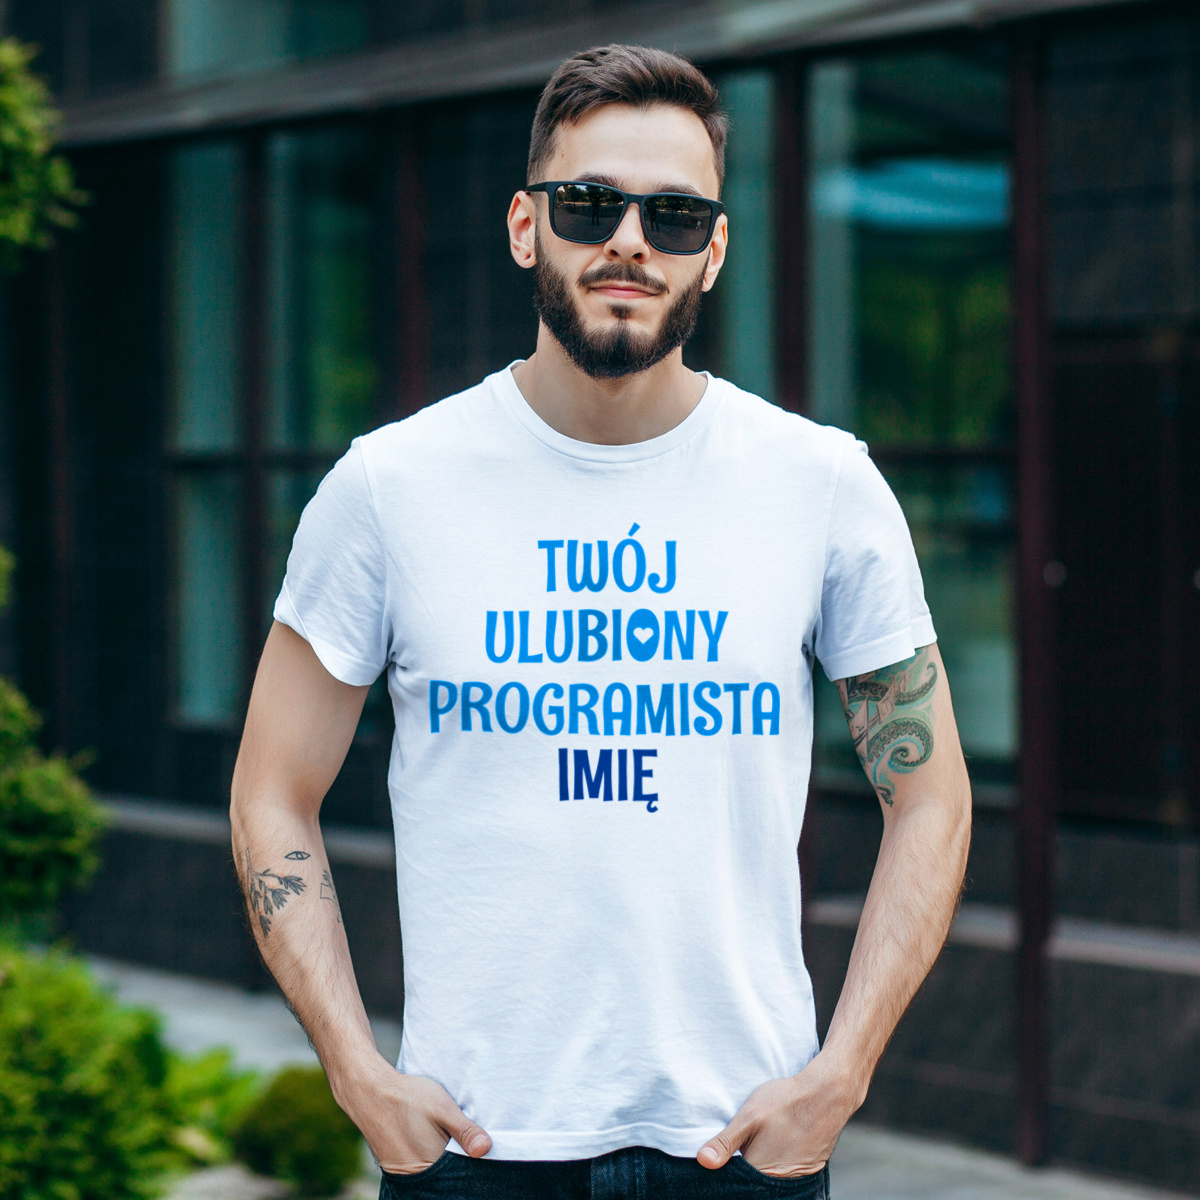 Twój Ulubiony Programista - Twoje Imię - Męska Koszulka Biała